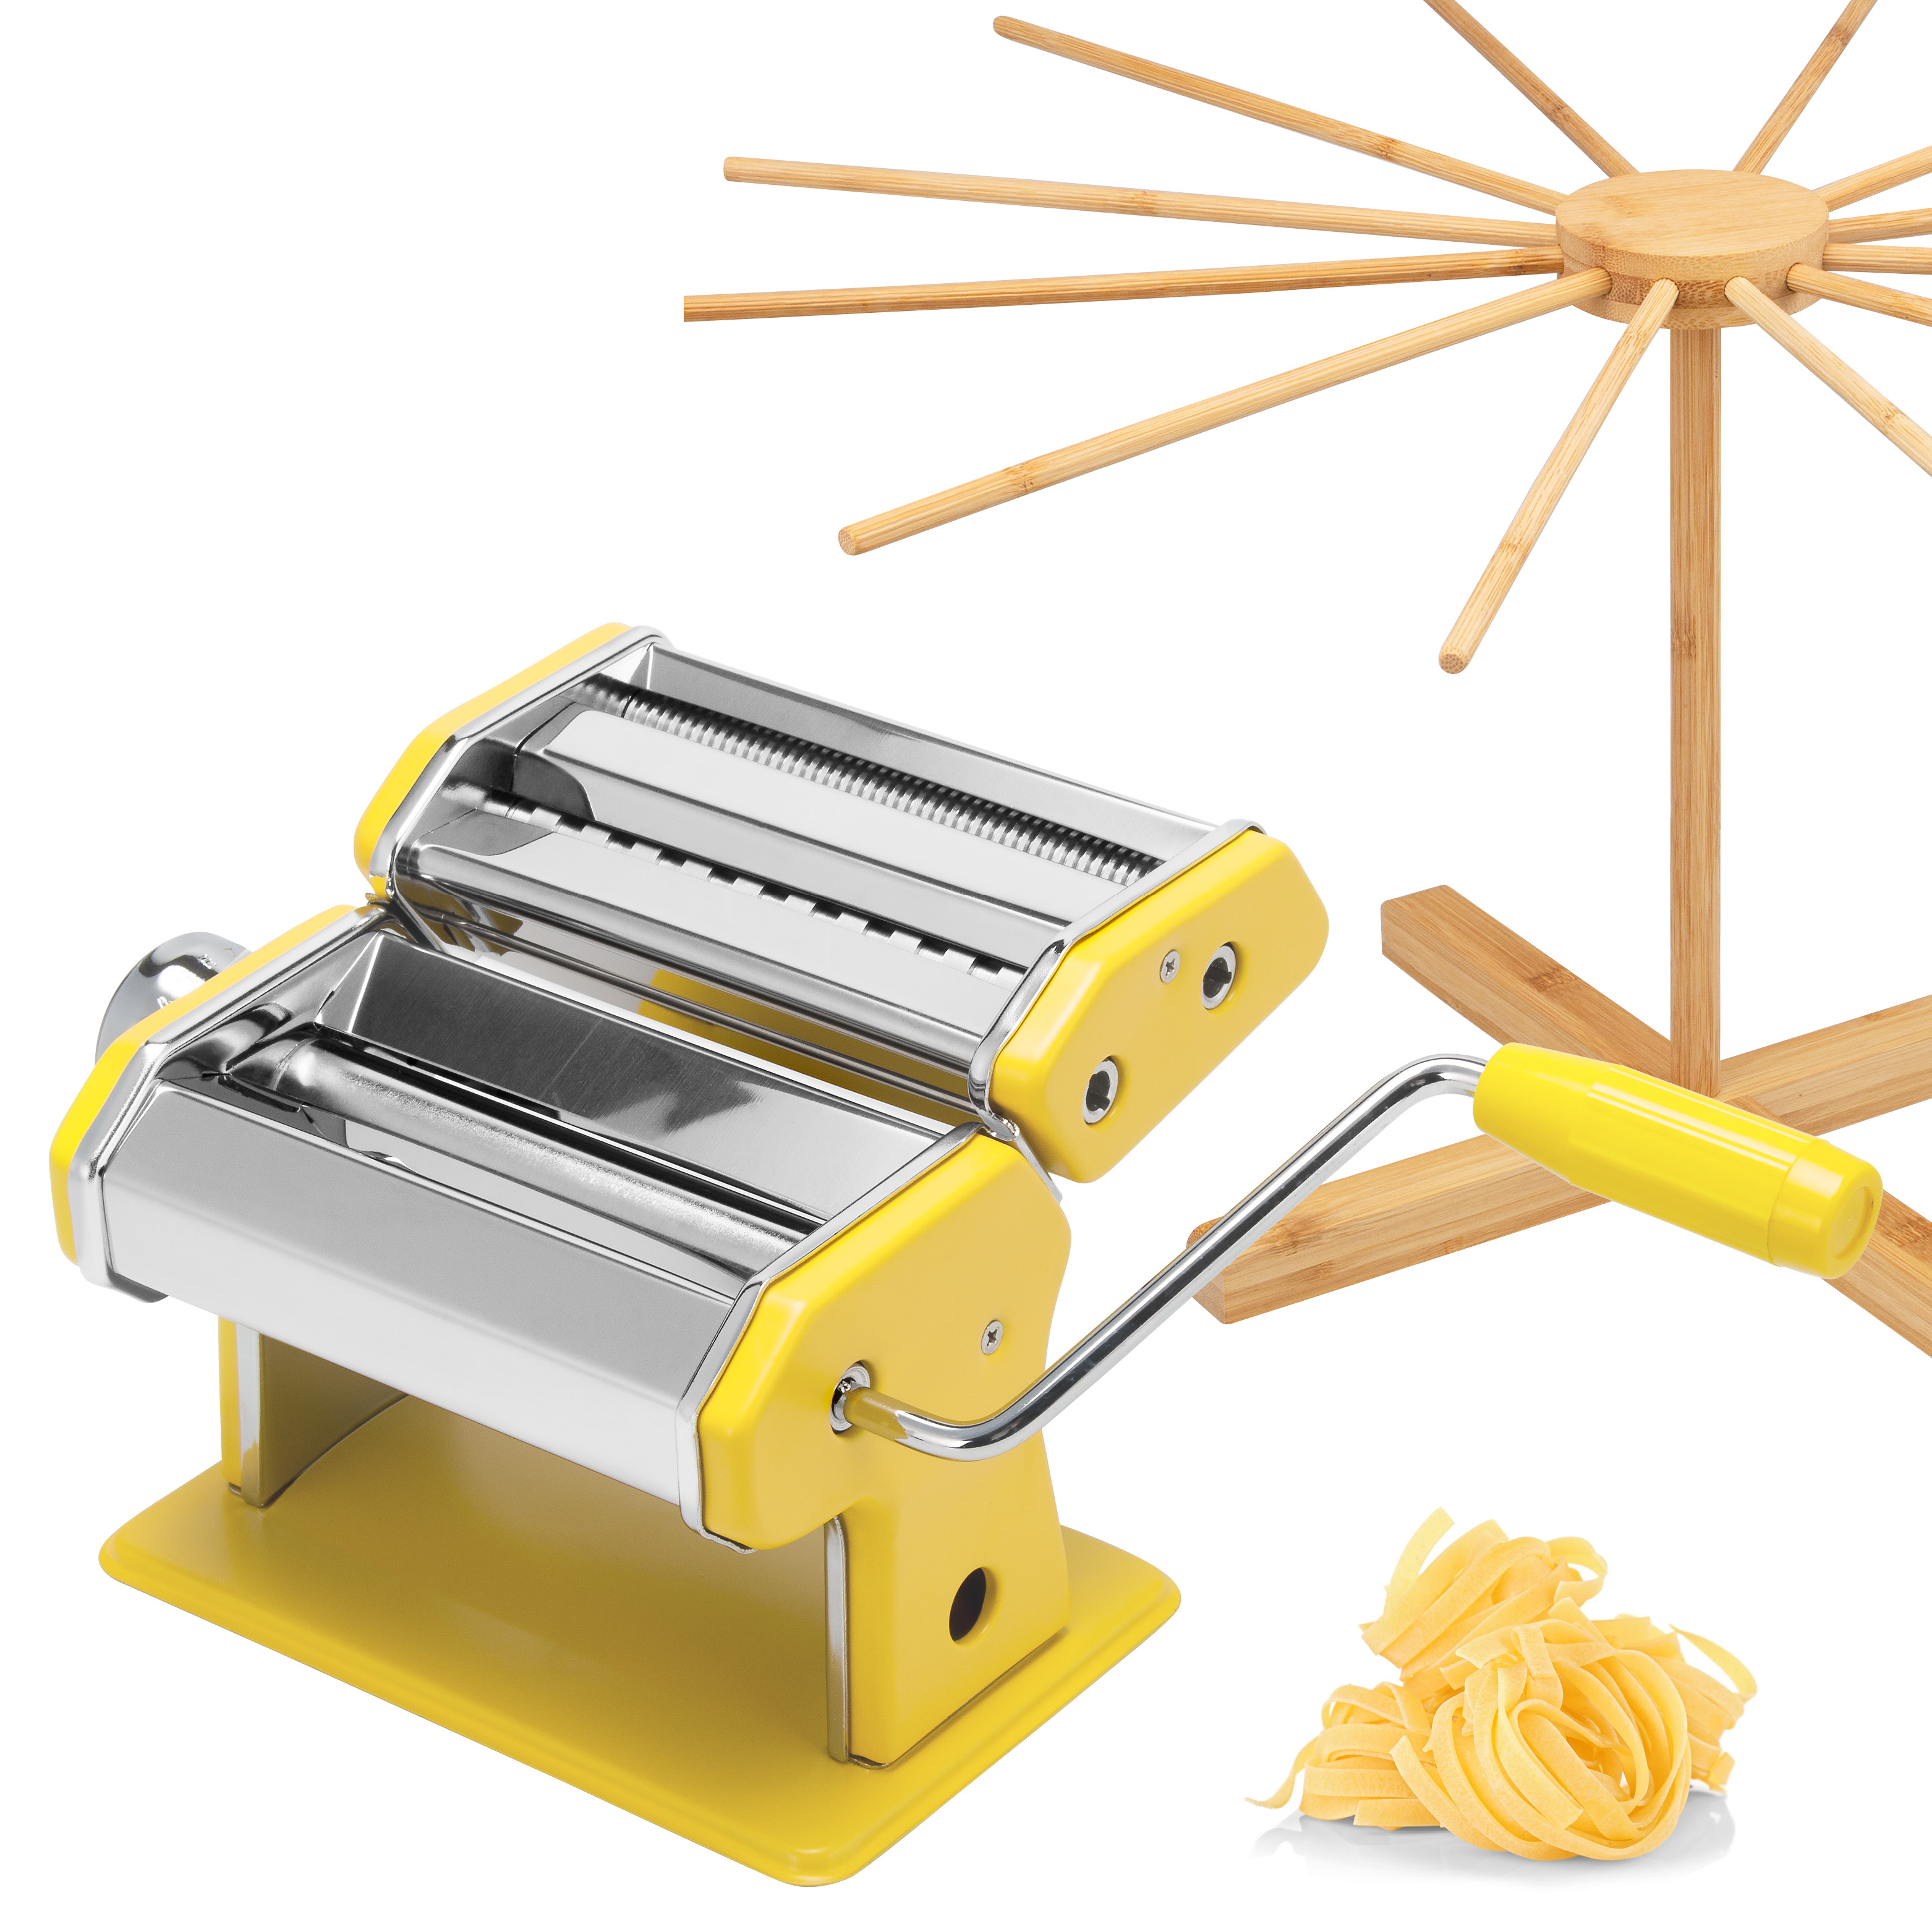 Nudelmaschine für Spaghetti, Pasta und Lasagne inkl. Nudeltrocker aus Bambus als Set, gelb